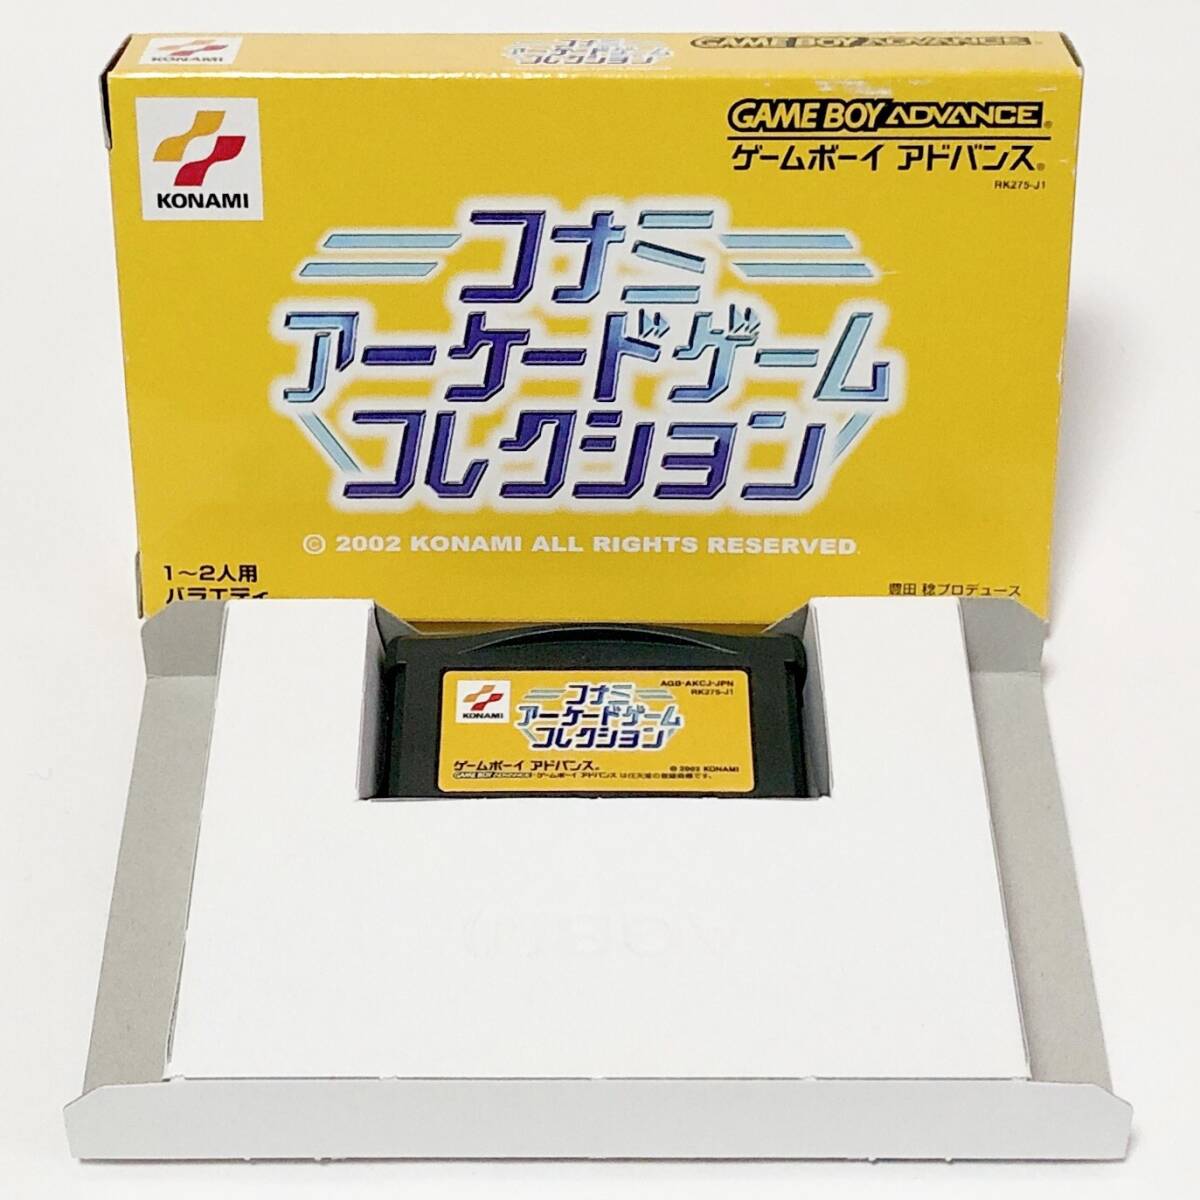 ゲームボーイアドバンス コナミ アーケードゲーム コレクション 箱説付き 痛みあり GameBoy Advance Konami Arcade Game Collection CIB